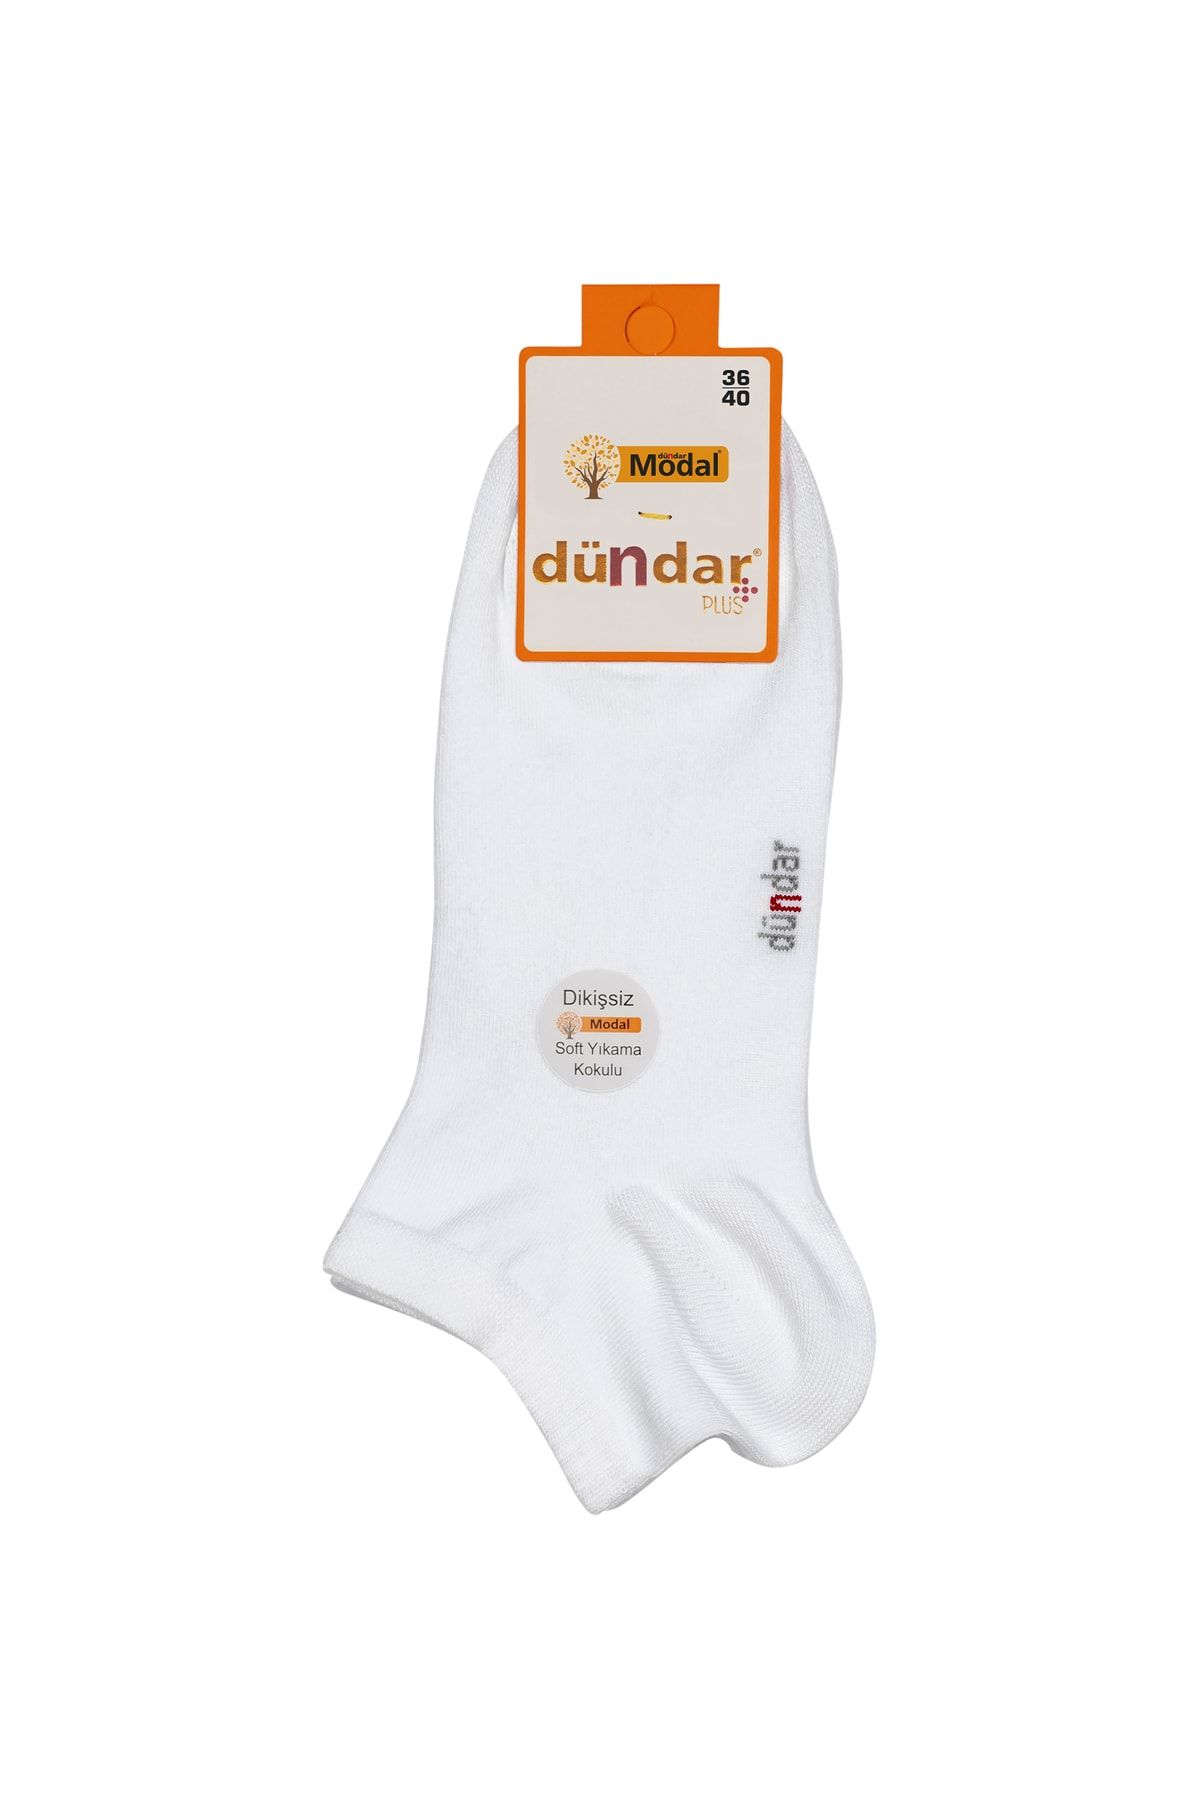 Dündar Kadın Modal Patik Çorap 4506 3'lü Paket